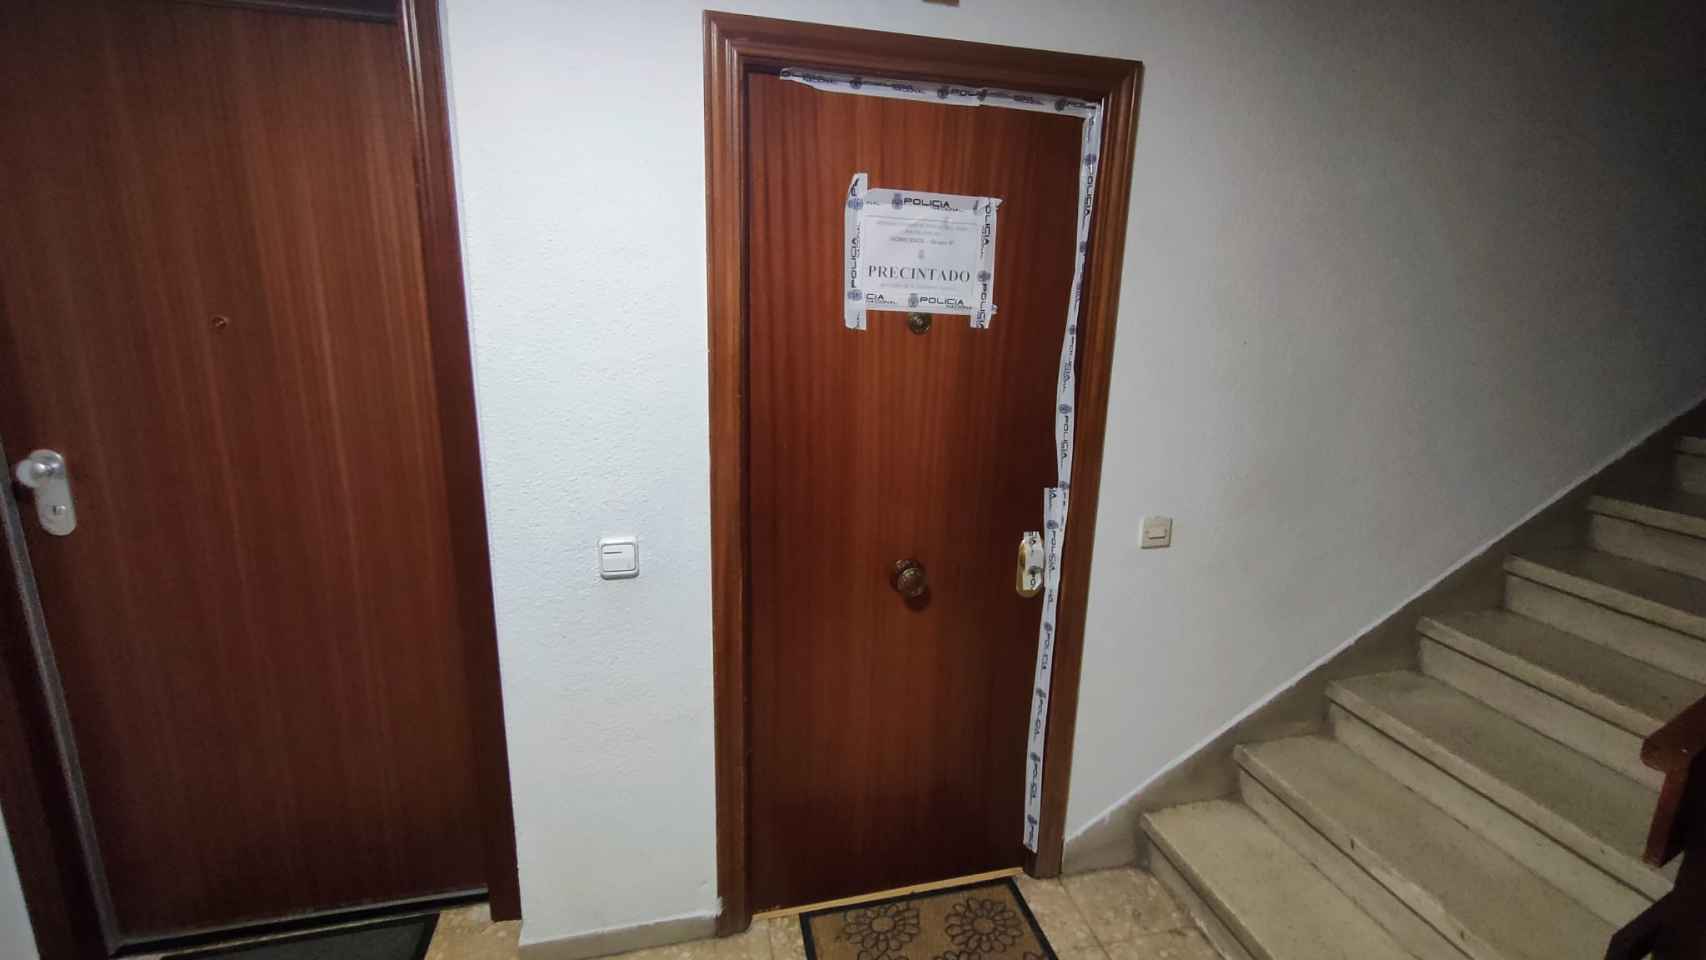 La puerta del domicilio del matrimonio precintada por la Policía Nacional.